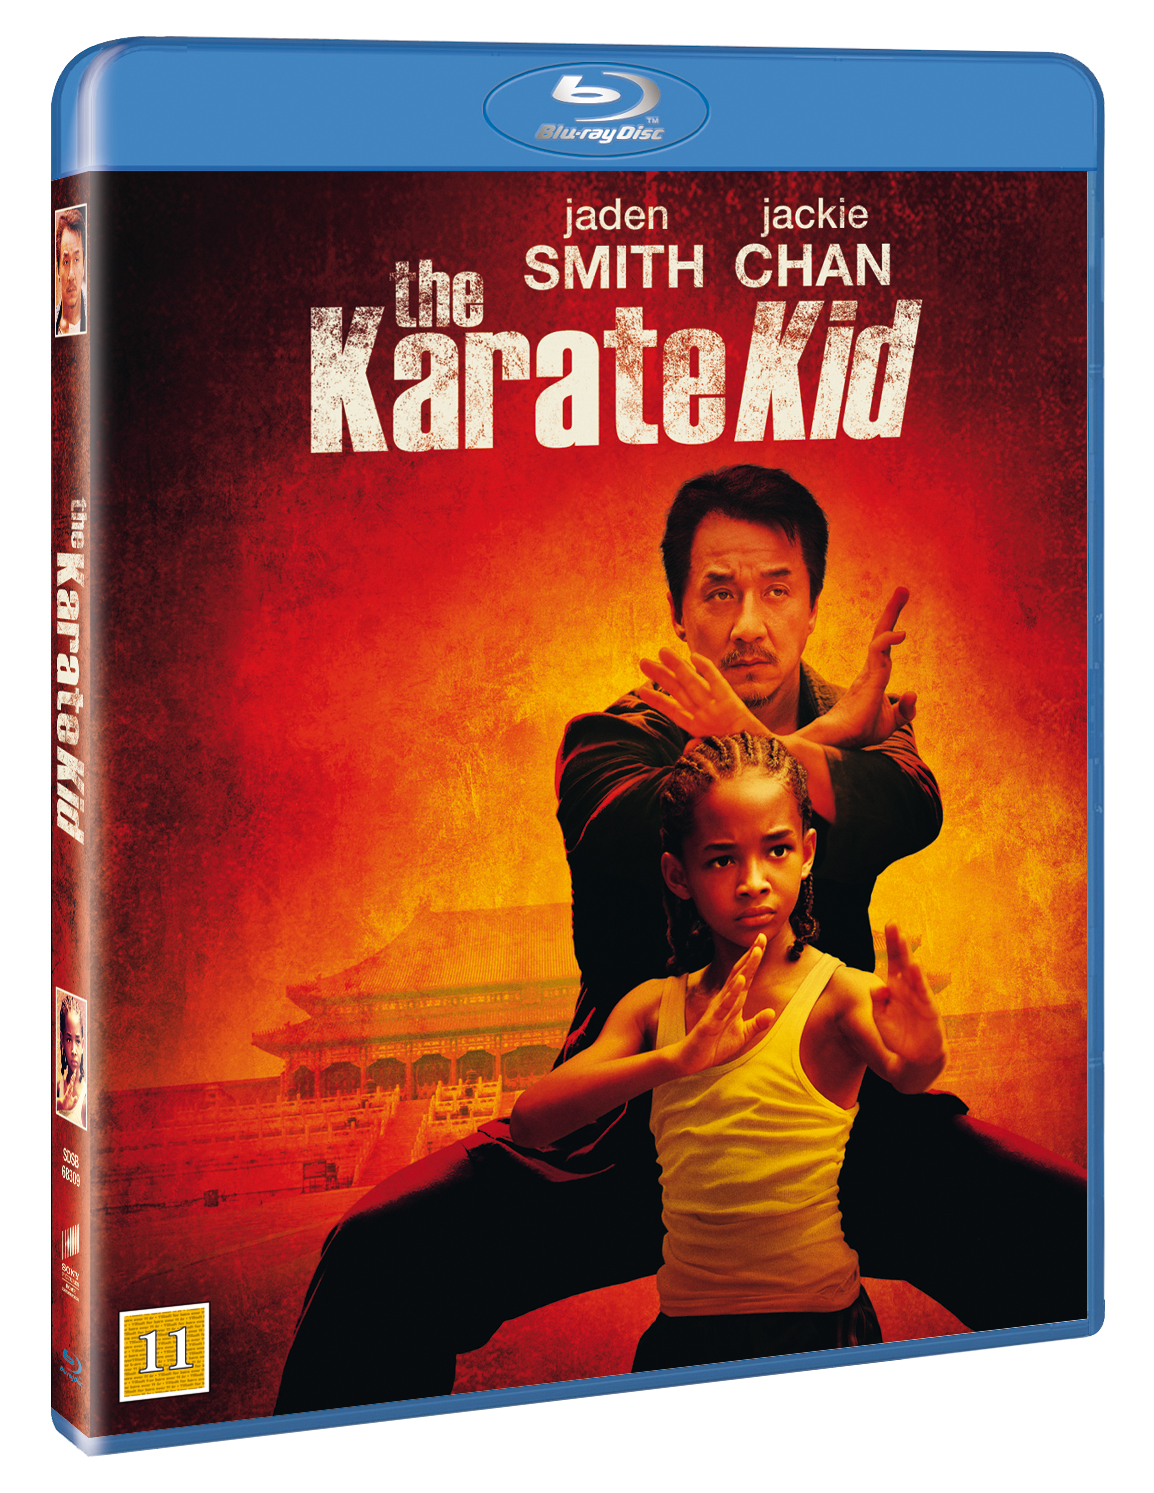 jaden smith the karate kid full movie